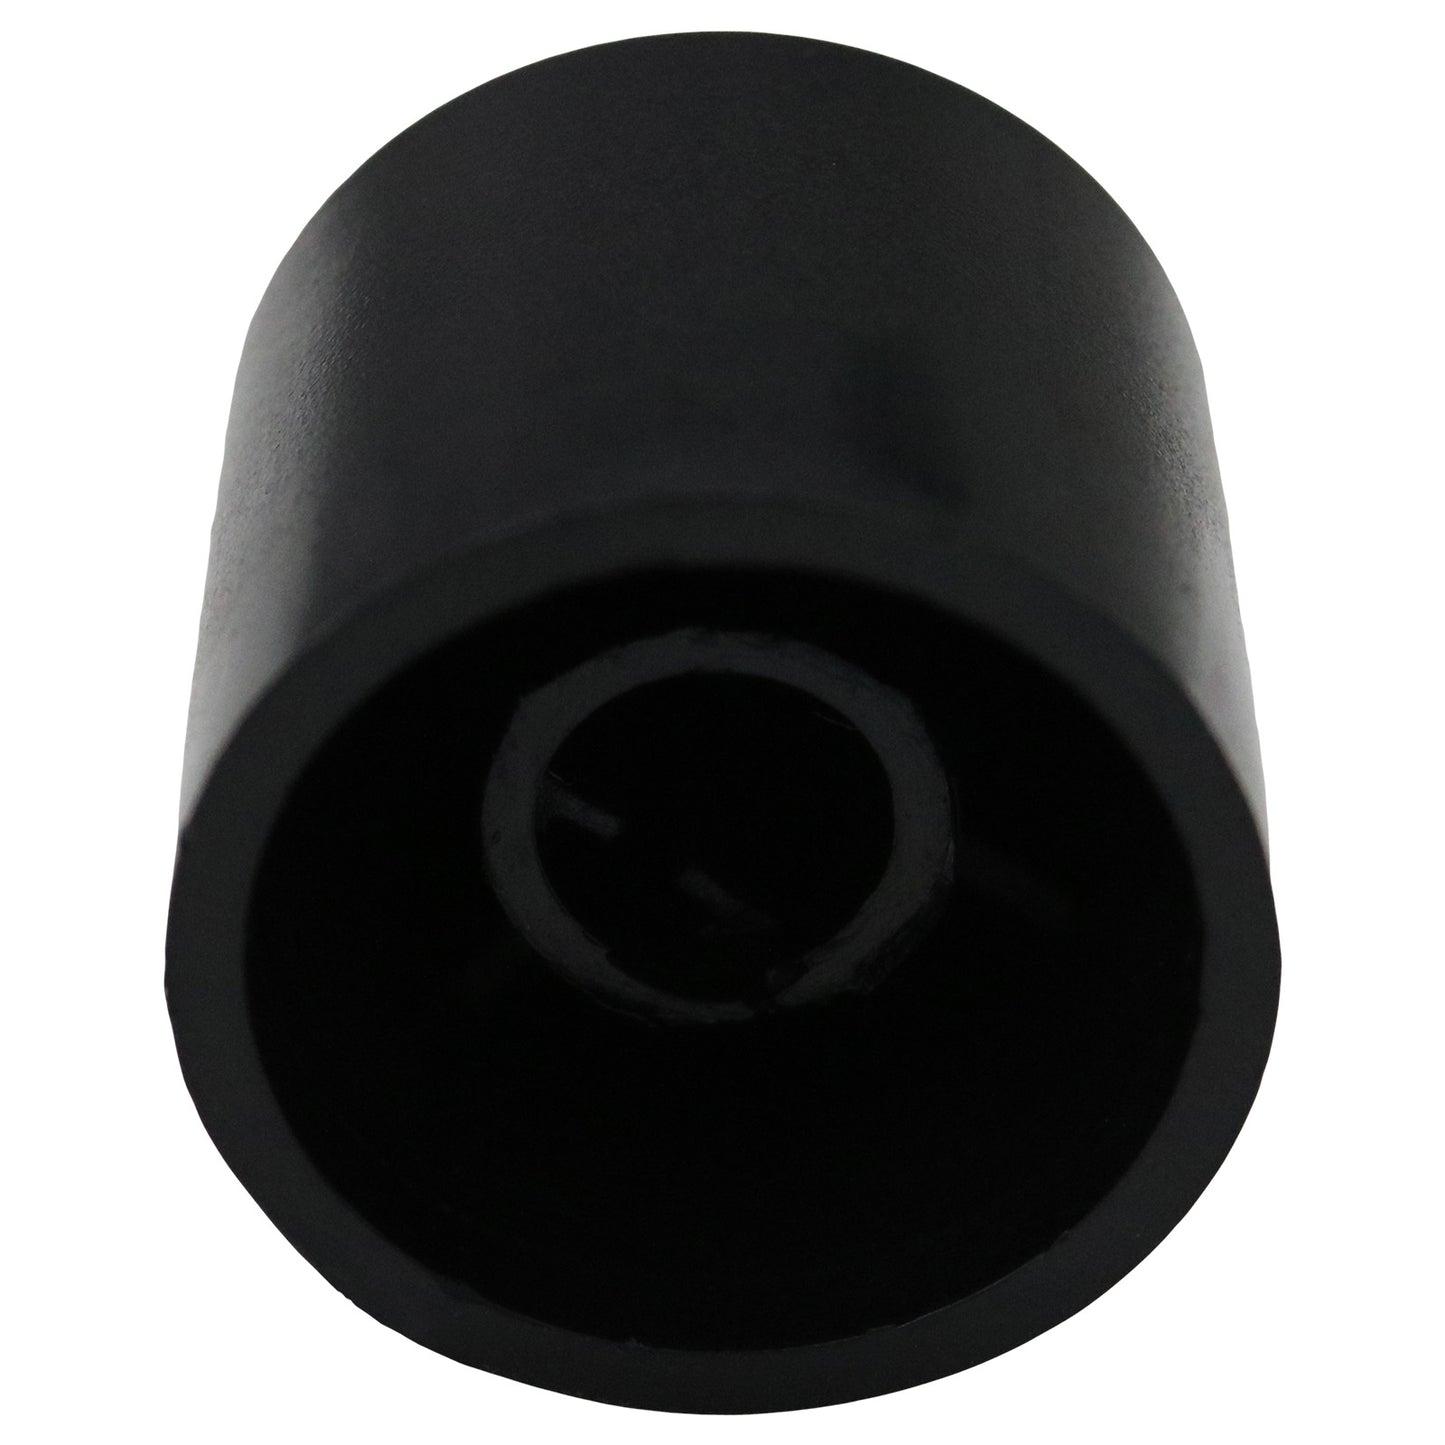 Plain Black Rotary Encoder Control Knob